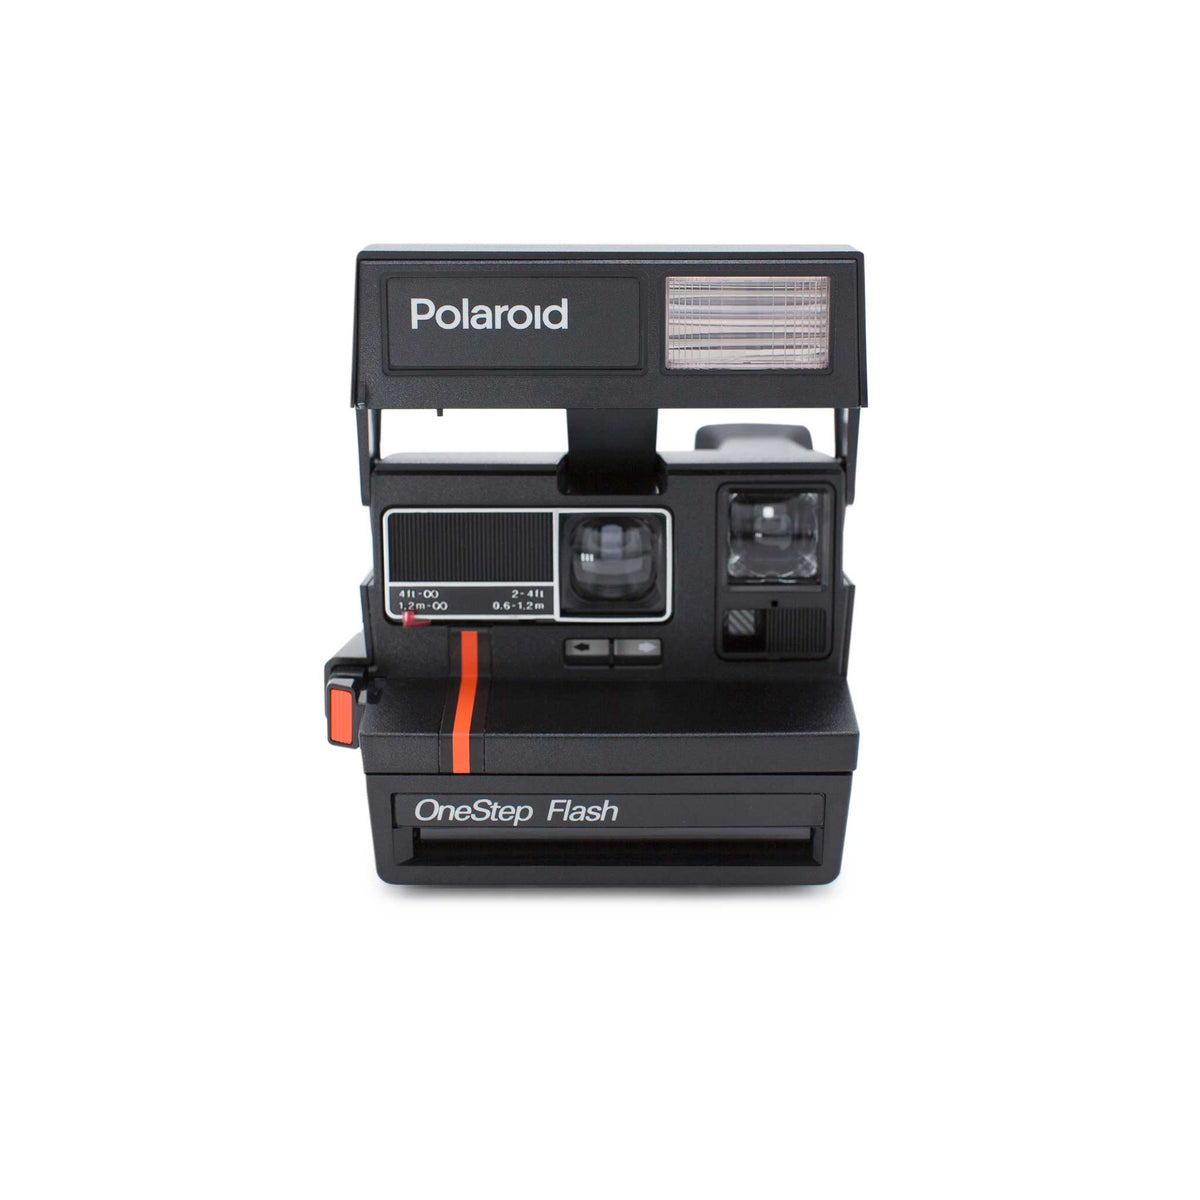 Polaroid 600 :: Red Stripe